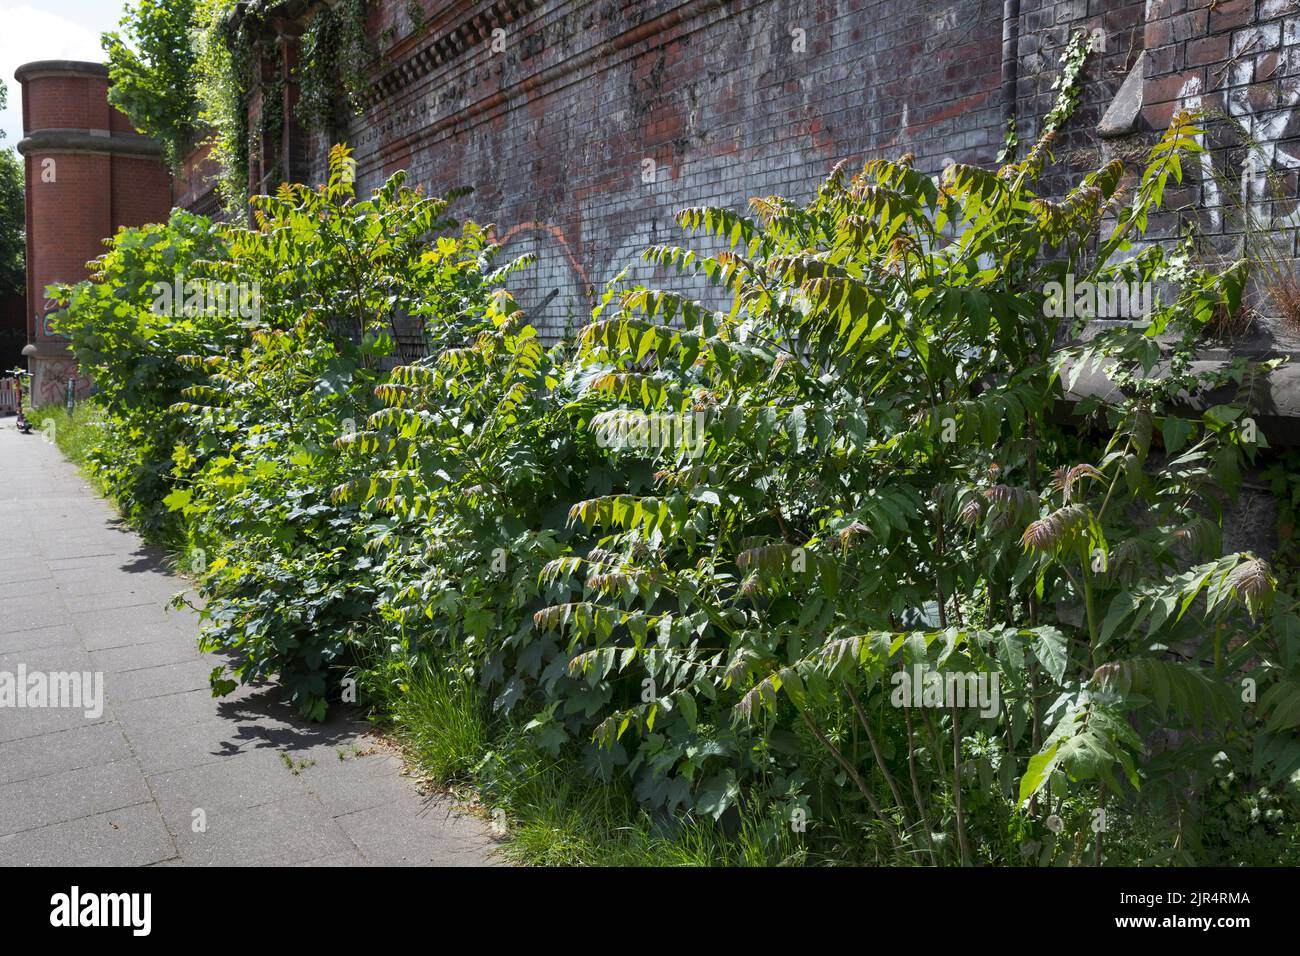 Arbre du ciel, arbre du ciel (Ailanthus altissima, Ailanthus glandulosa), croissance de la souche le long d'un mur, Allemagne Banque D'Images